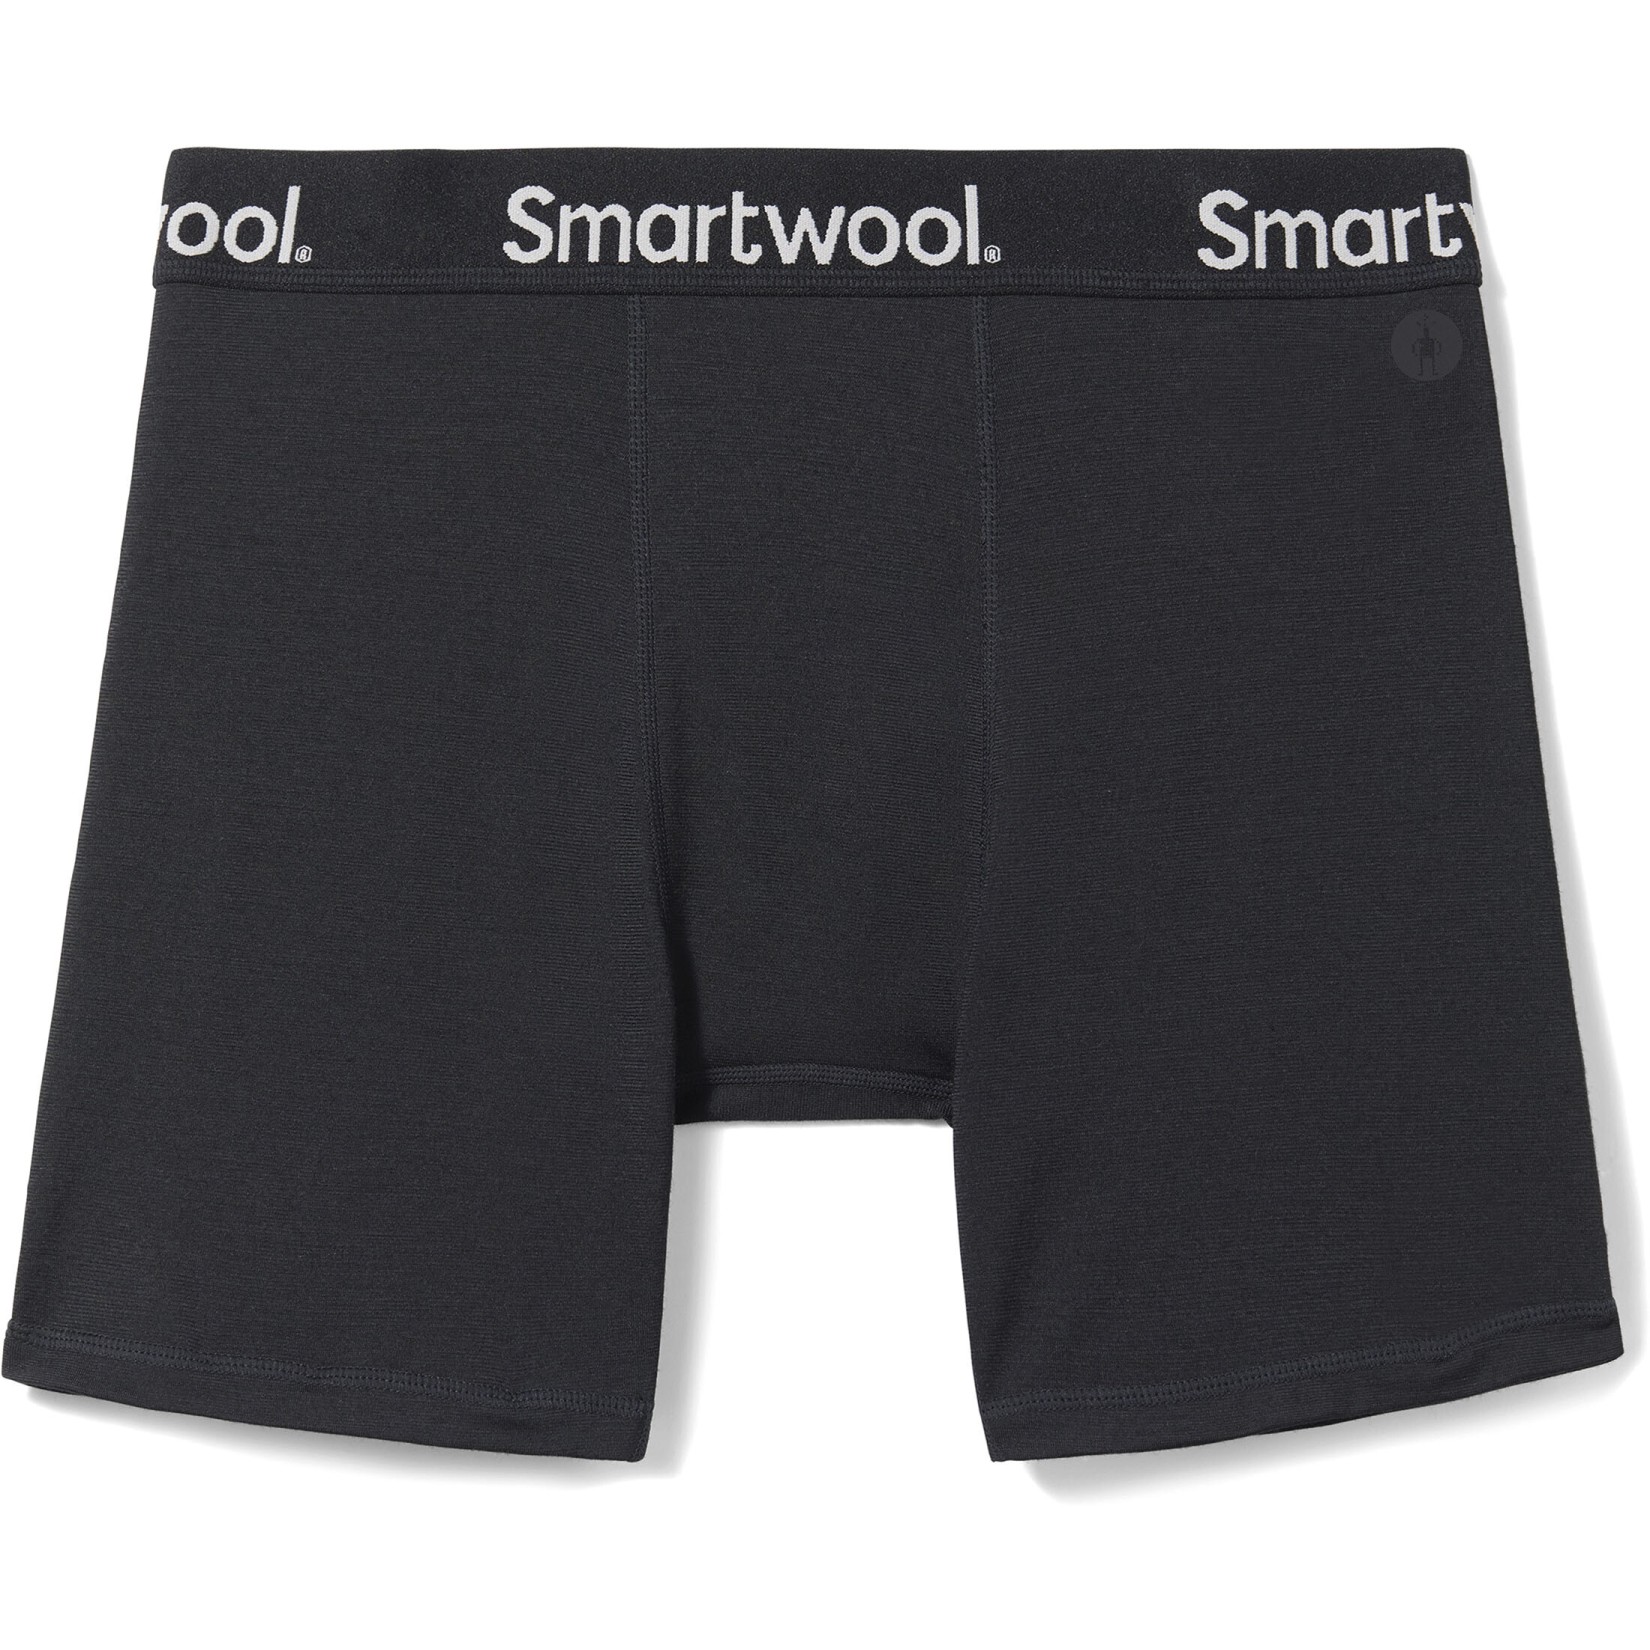 Productfoto van SmartWool Boxershort Boxed - 001 zwart